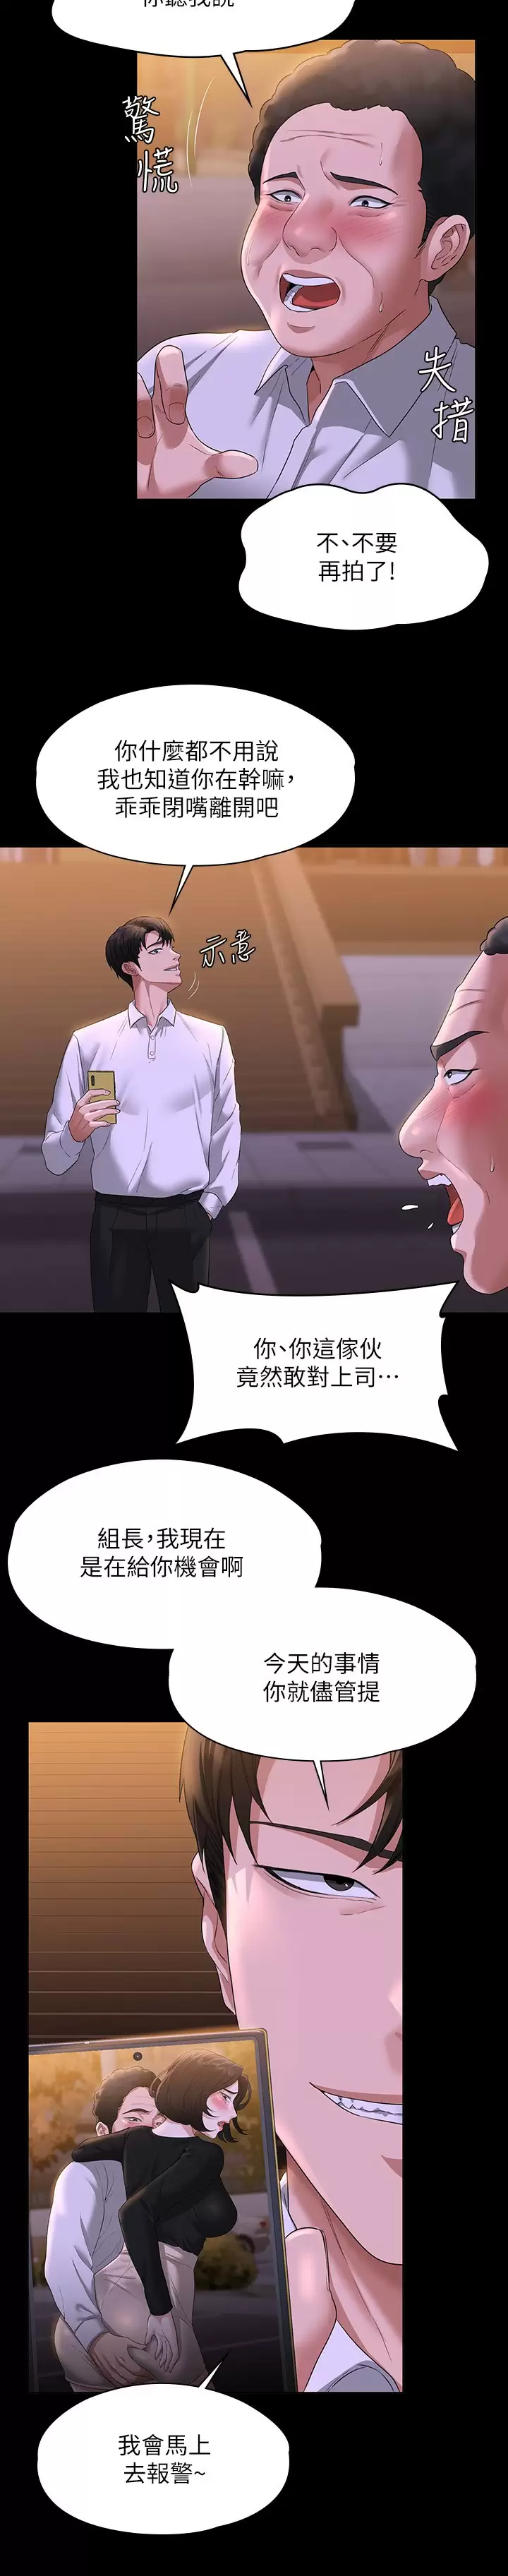 韩国污漫画 超級公務員 第47话 让人羞耻的淫乱震动声 30